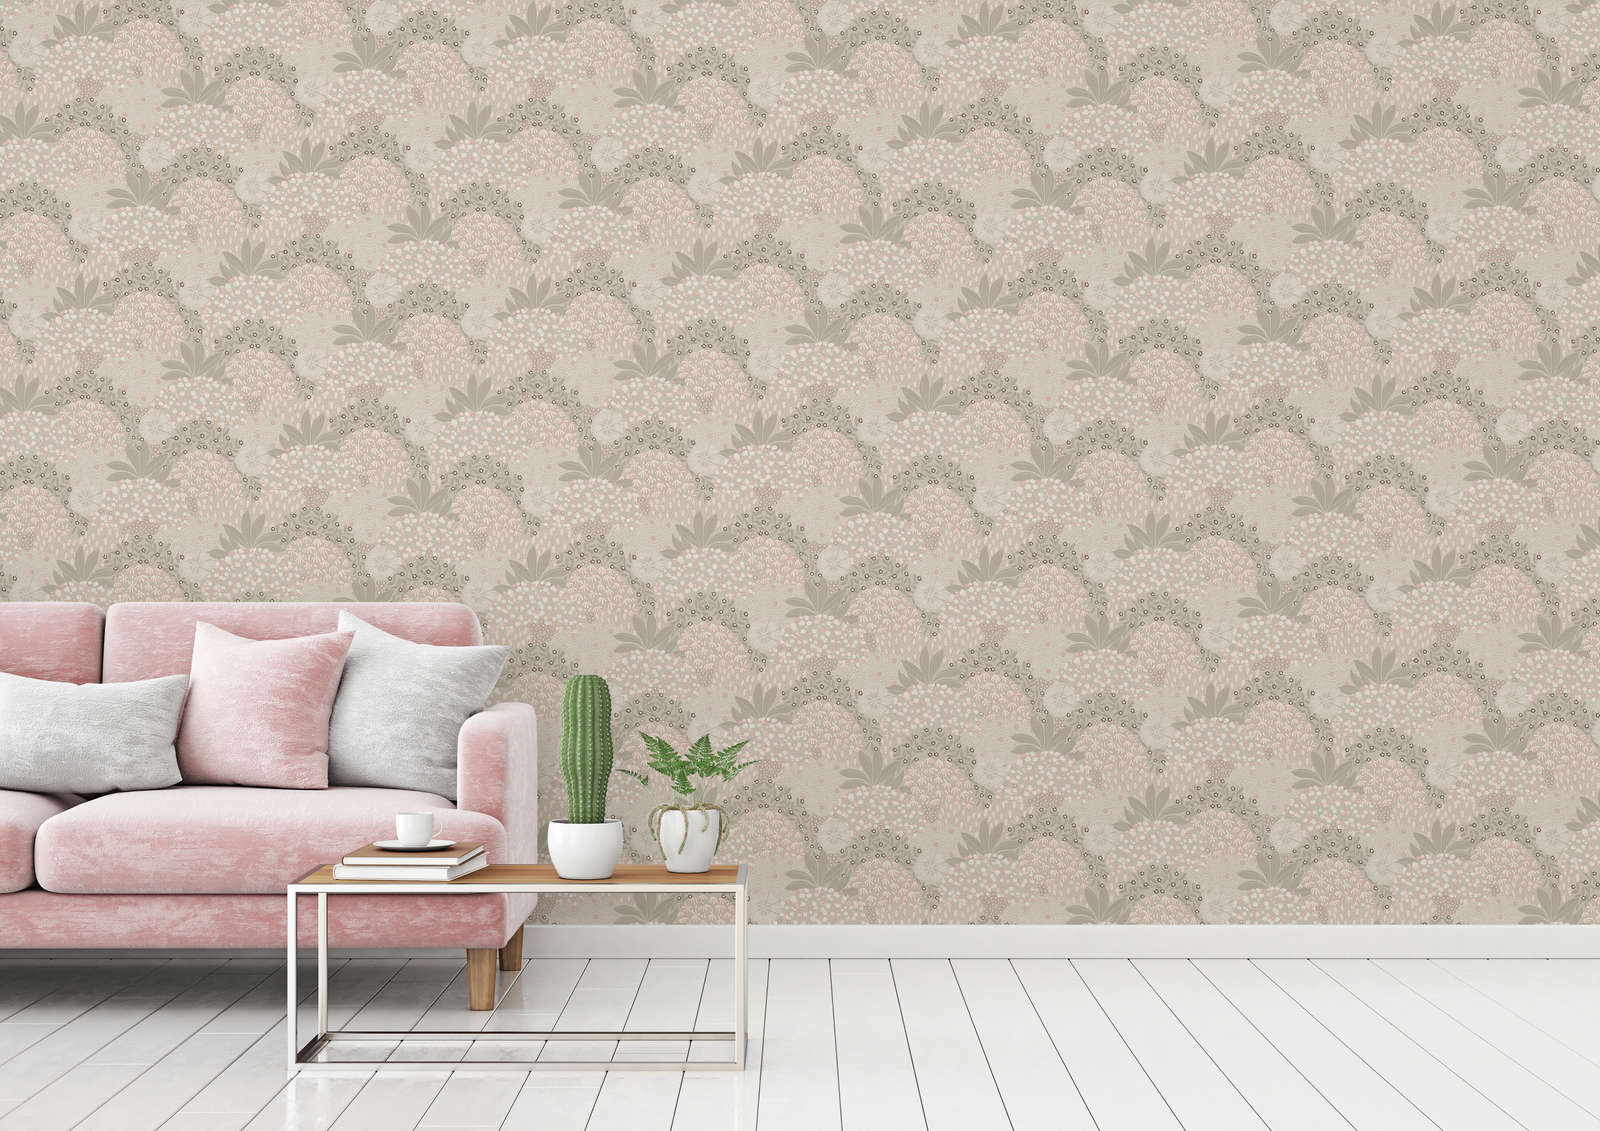             Vintage floral wallpaper with floral design - grey, pink
        